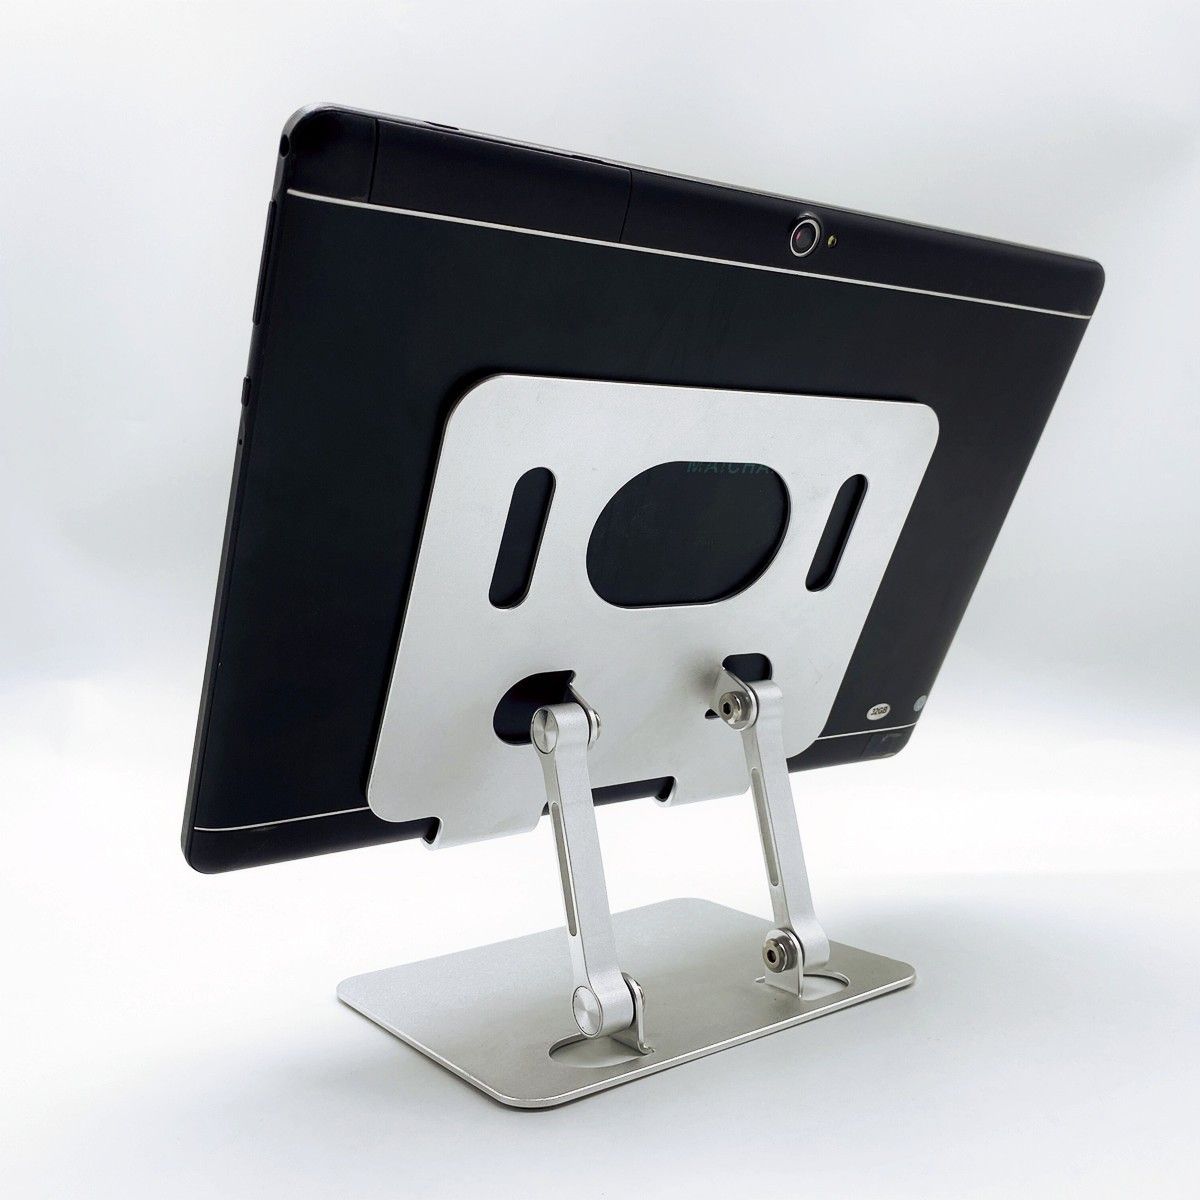 タブレット スタンド ipad スタンド折畳み式 高さ調整可能 Tabletスタンド 縦置き 横置きタブレットホルダー 収納便利